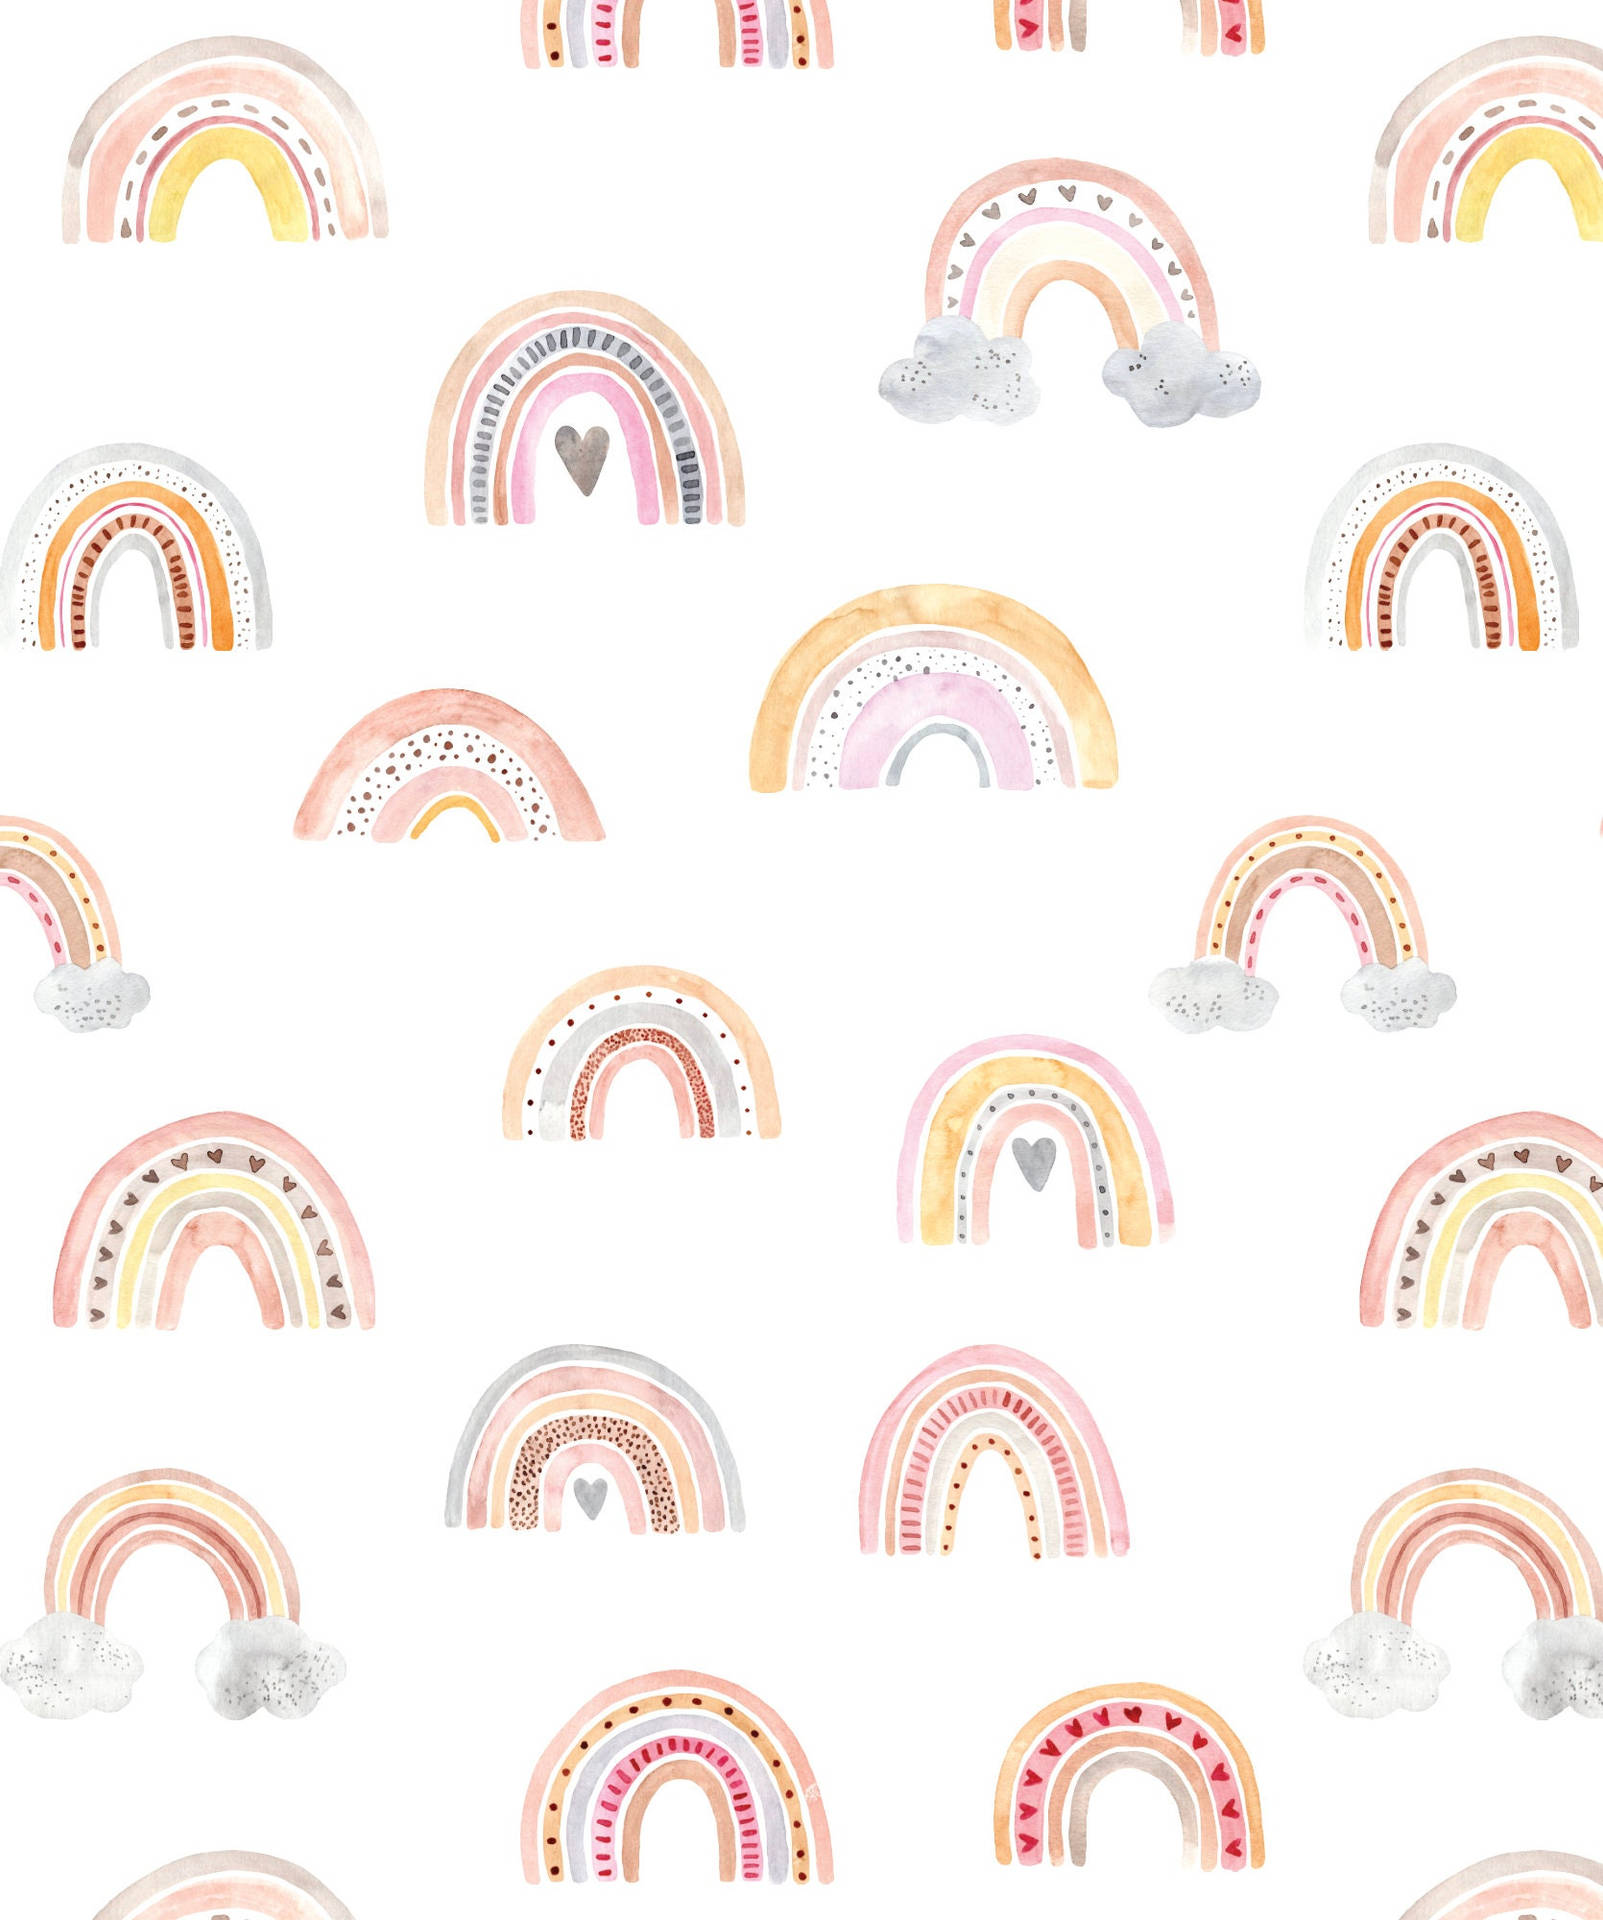 Boho Rainbow Images  Free Download on Freepik